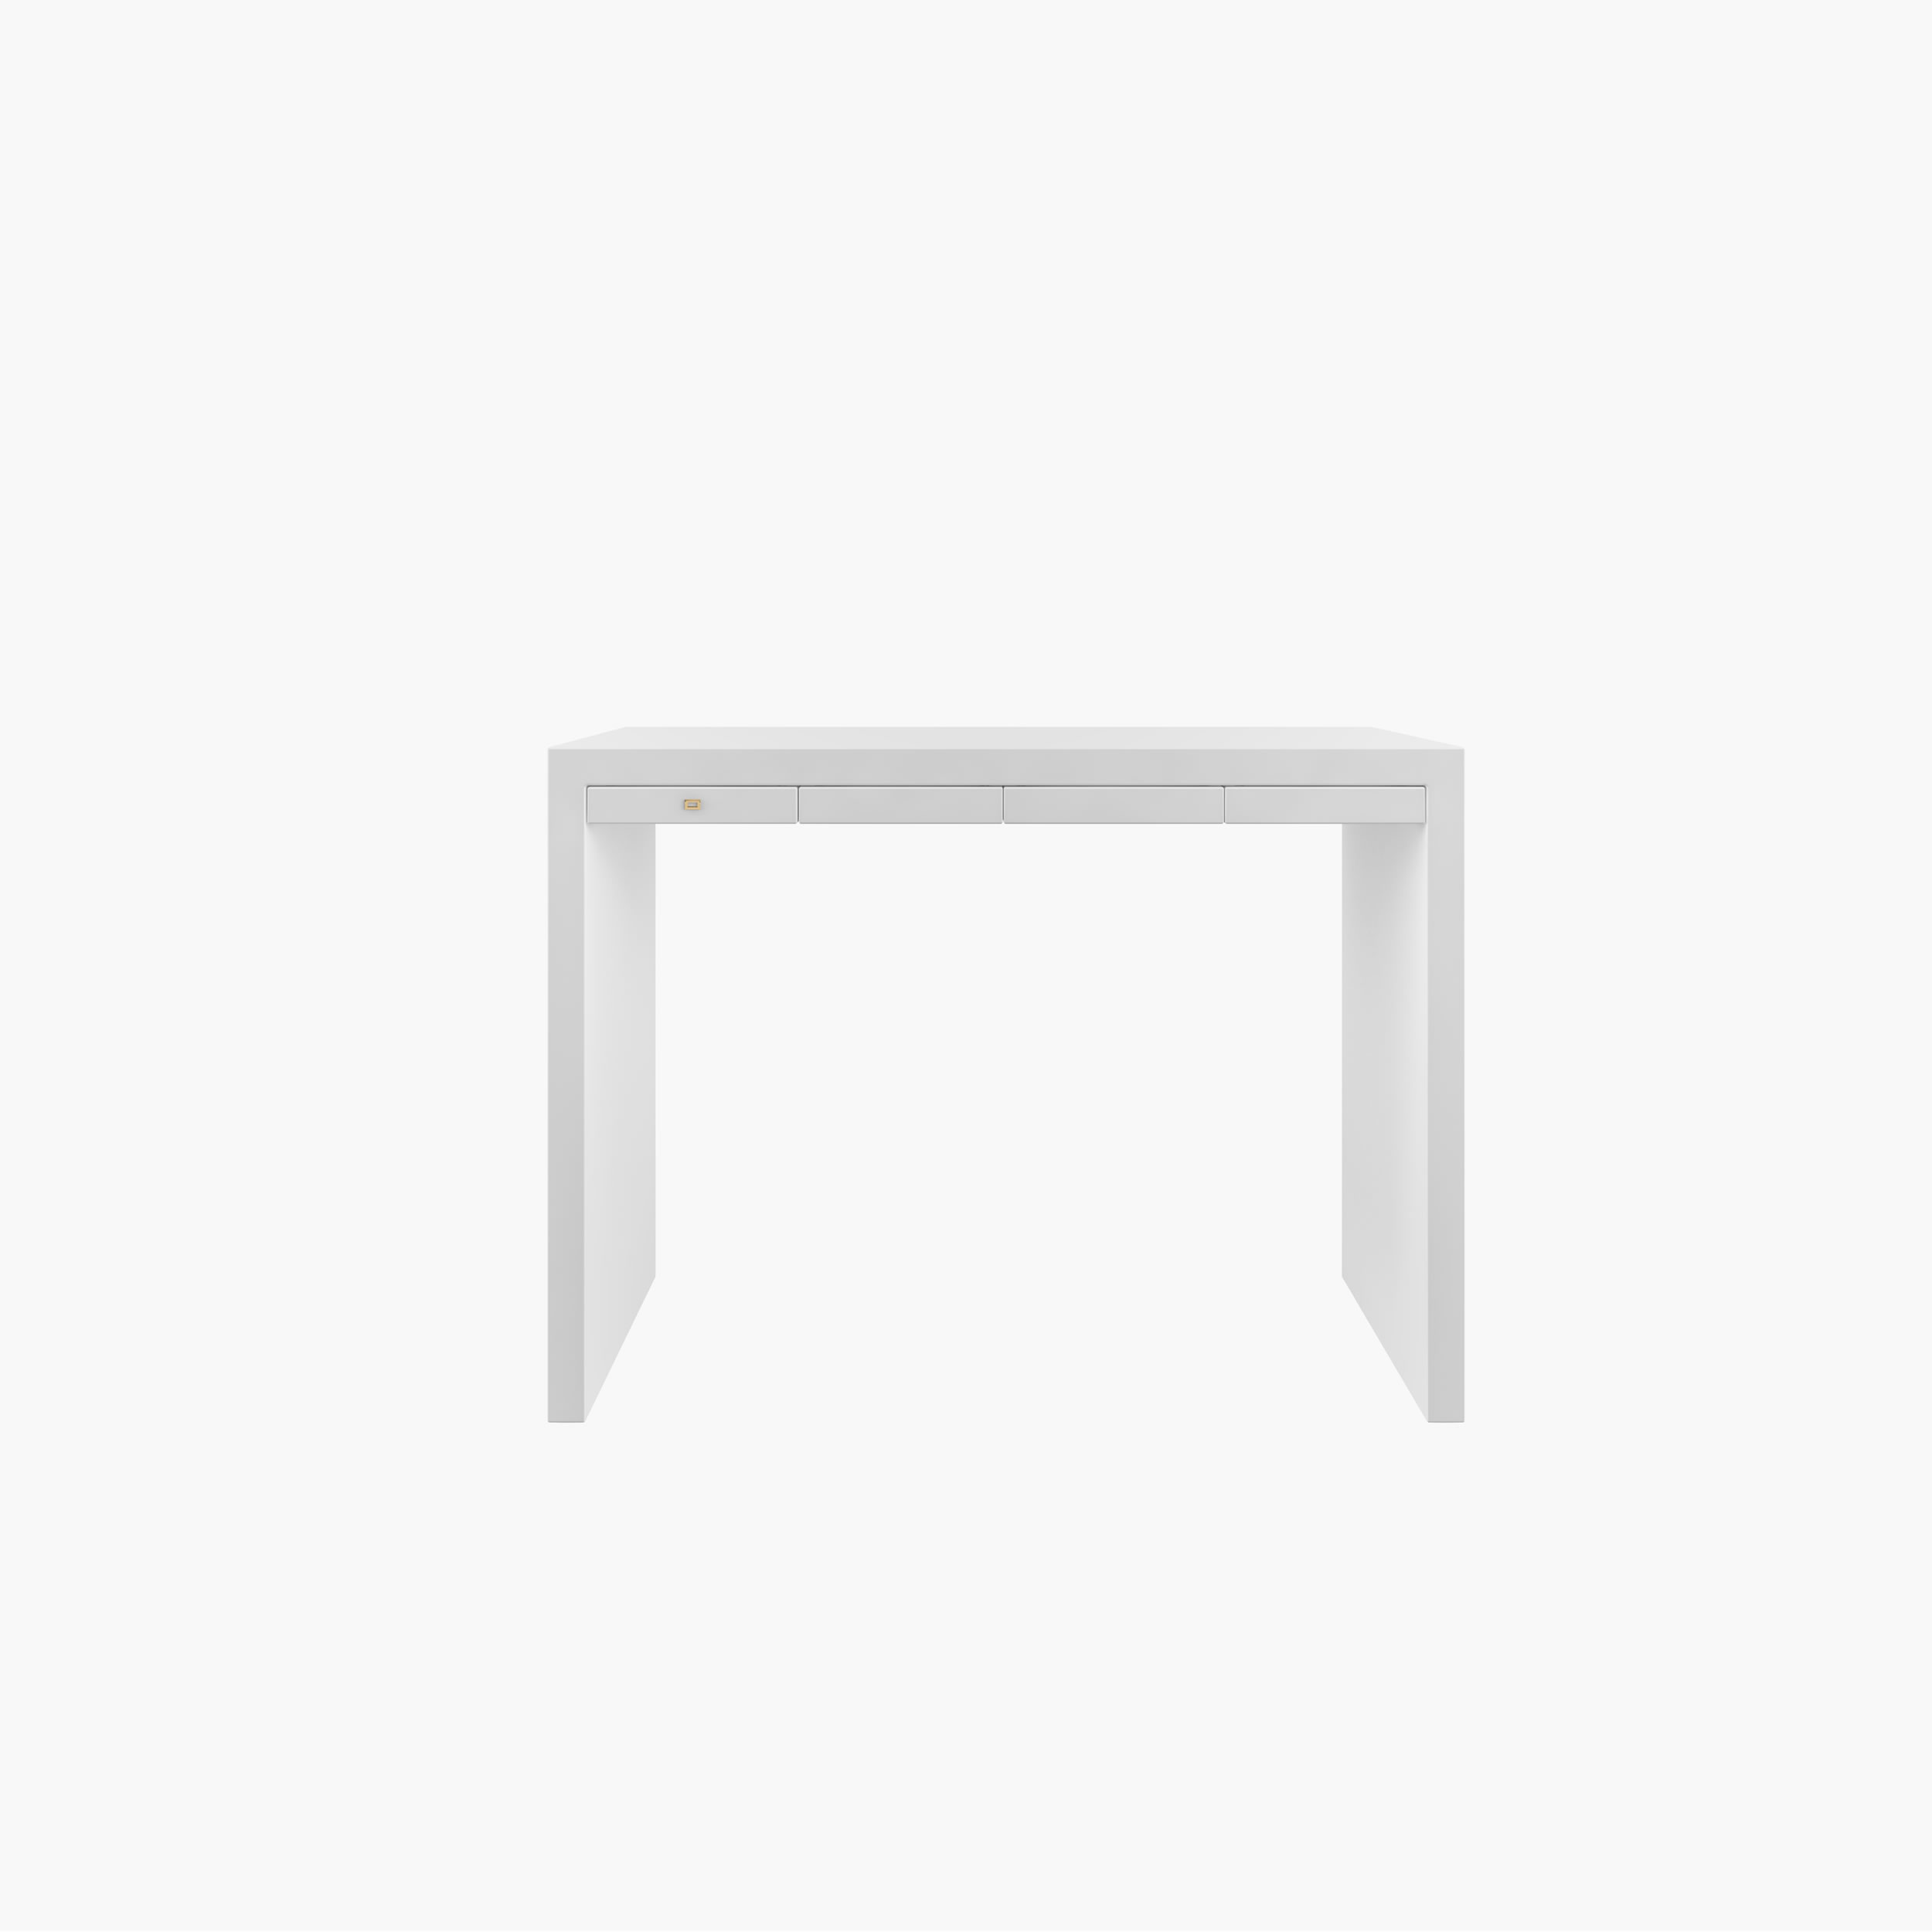 Konsoleig weiss white furniture Buero bespokedesign Konsolen FS 26 FELIX SCHWAKE